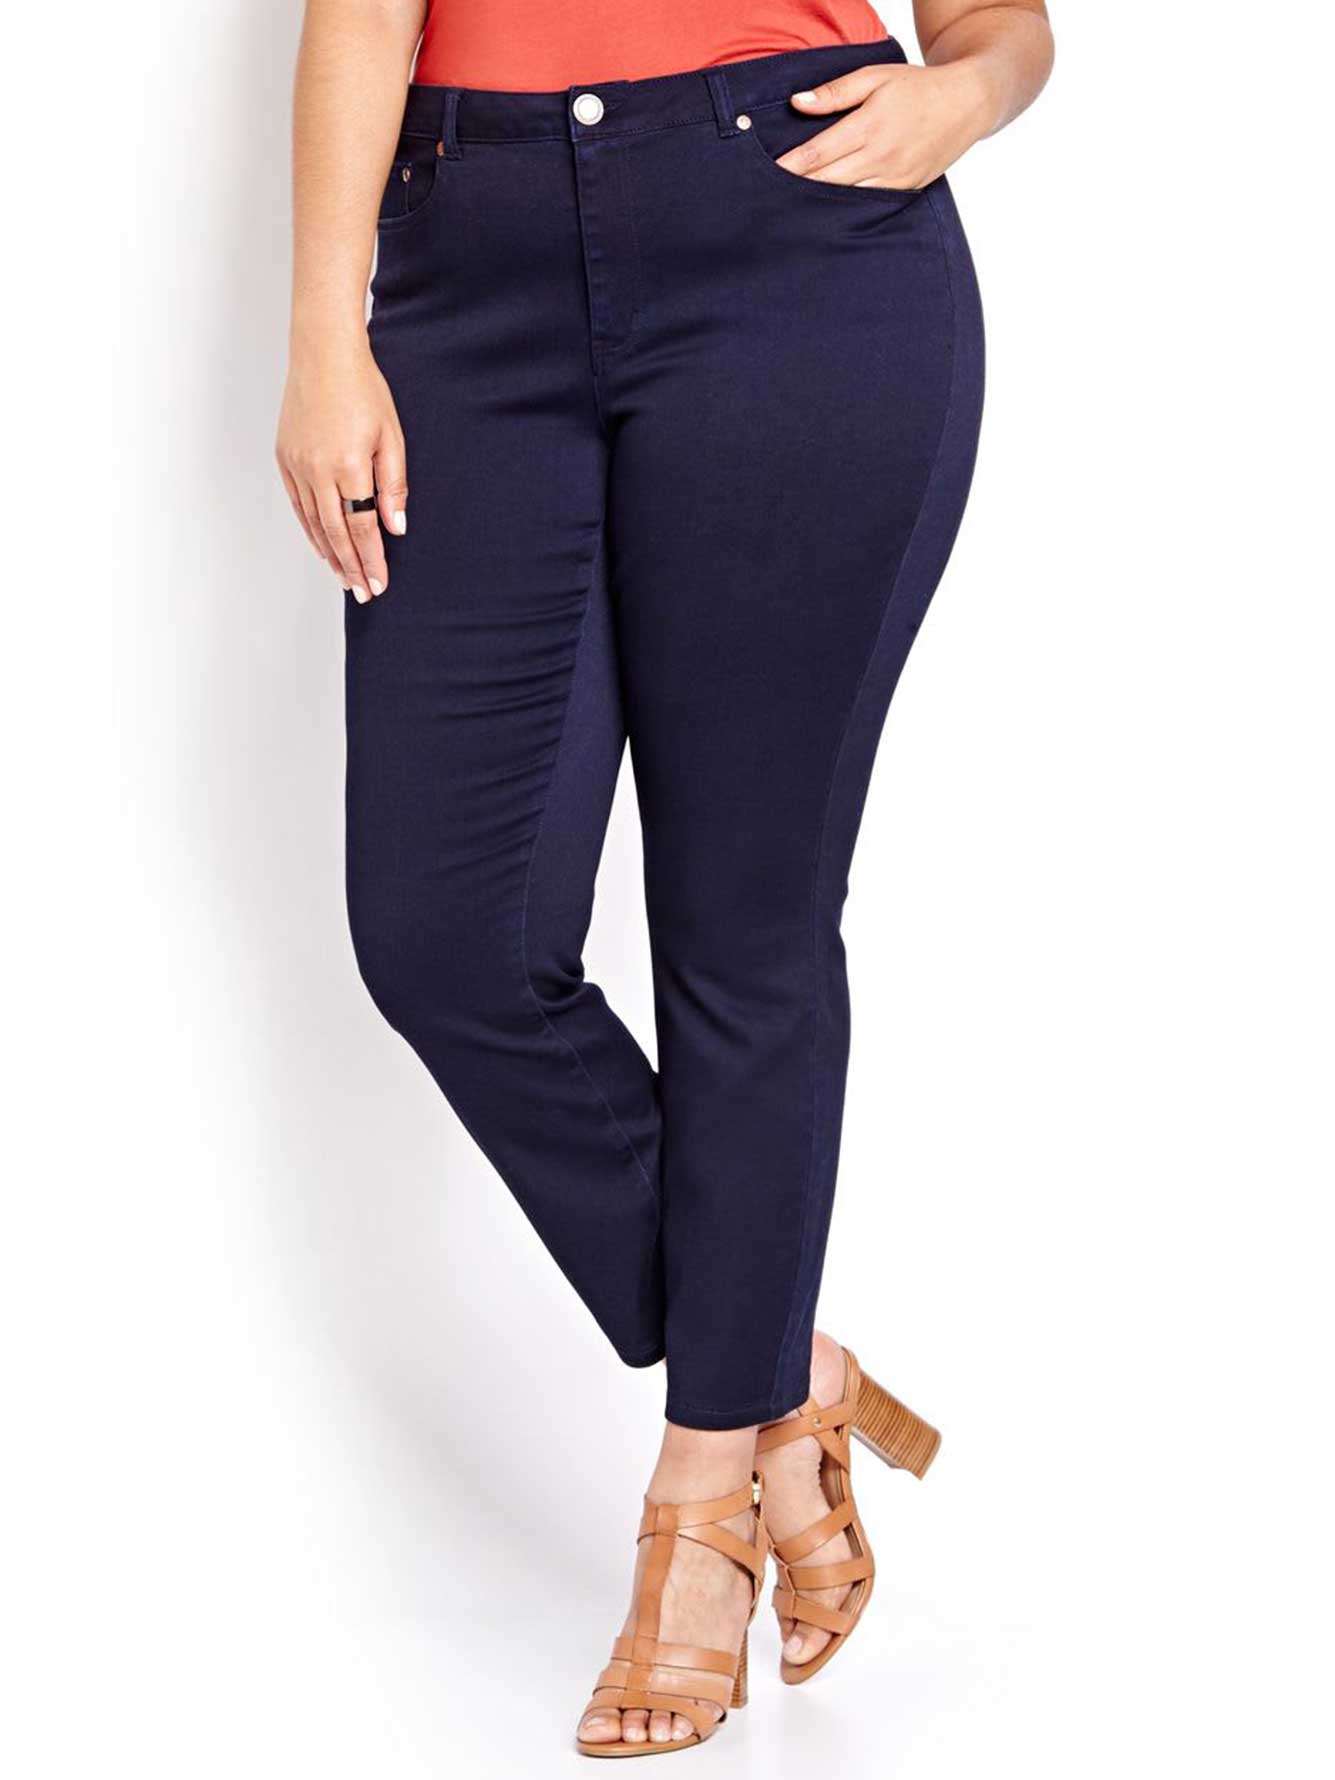 L&L Super Soft Skinny Jeans | Addition Elle